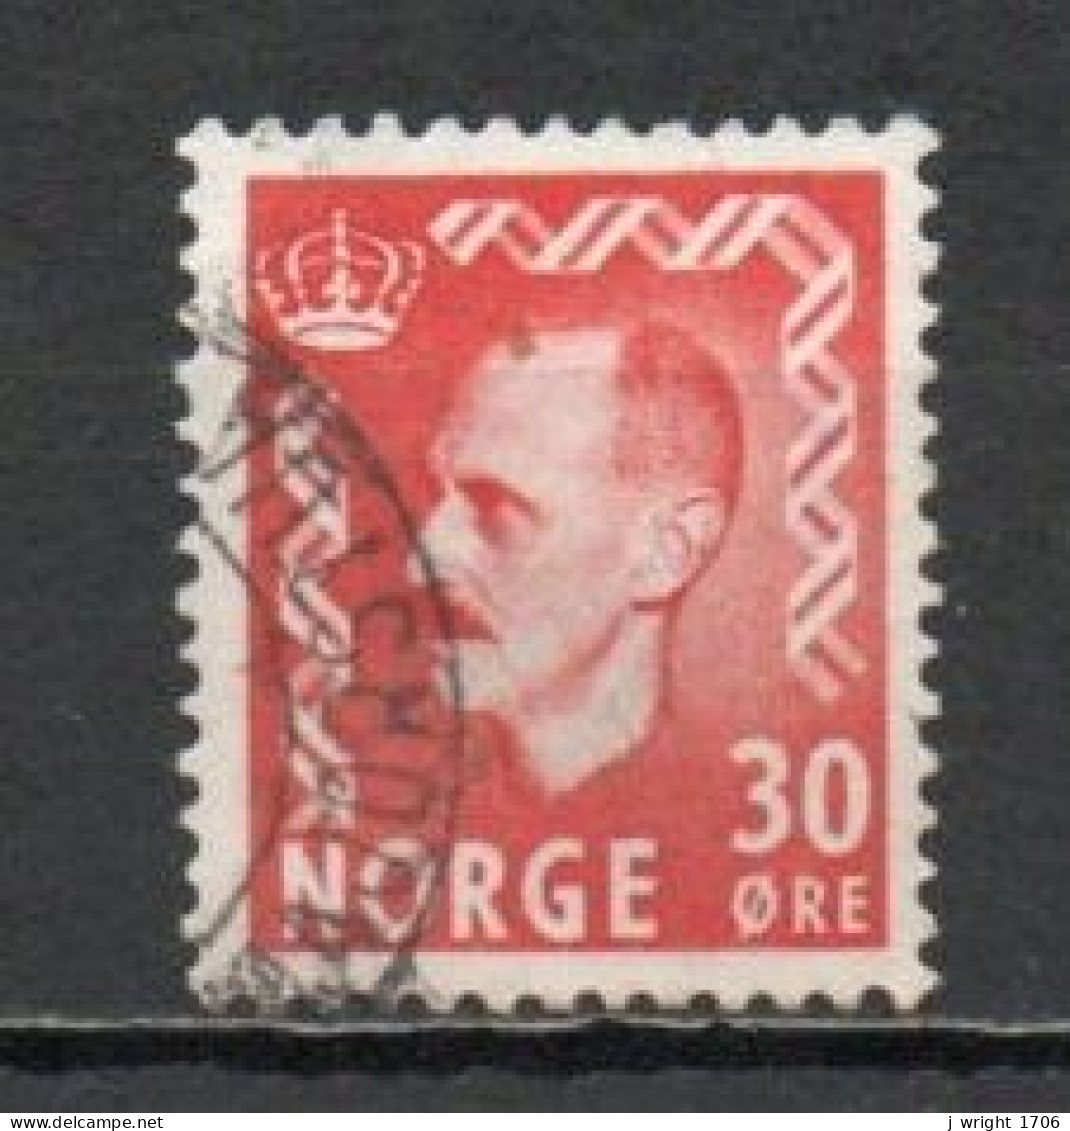 Norway, 1951, King Haakon VII, 30ö/Scarlet, USED - Gebraucht